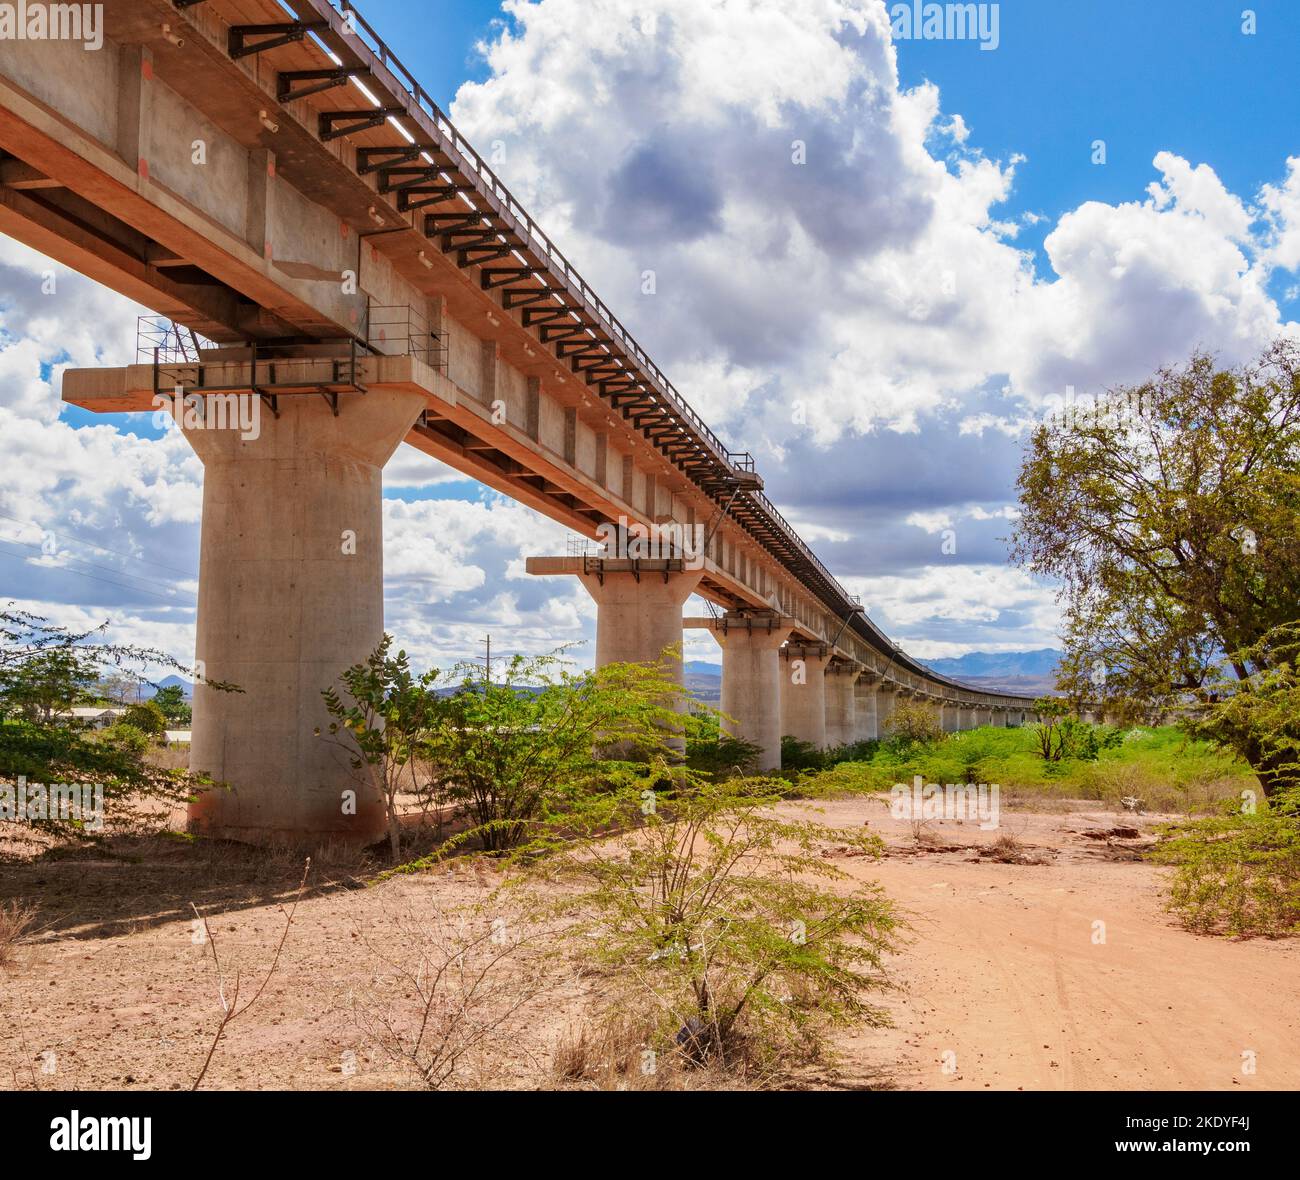 Erhöhter Abschnitt des Abschnitts von Nairobi nach Mombasa der von China finanzierten Standard Gauge Railway, die durch VOI in Kenia verläuft Stockfoto